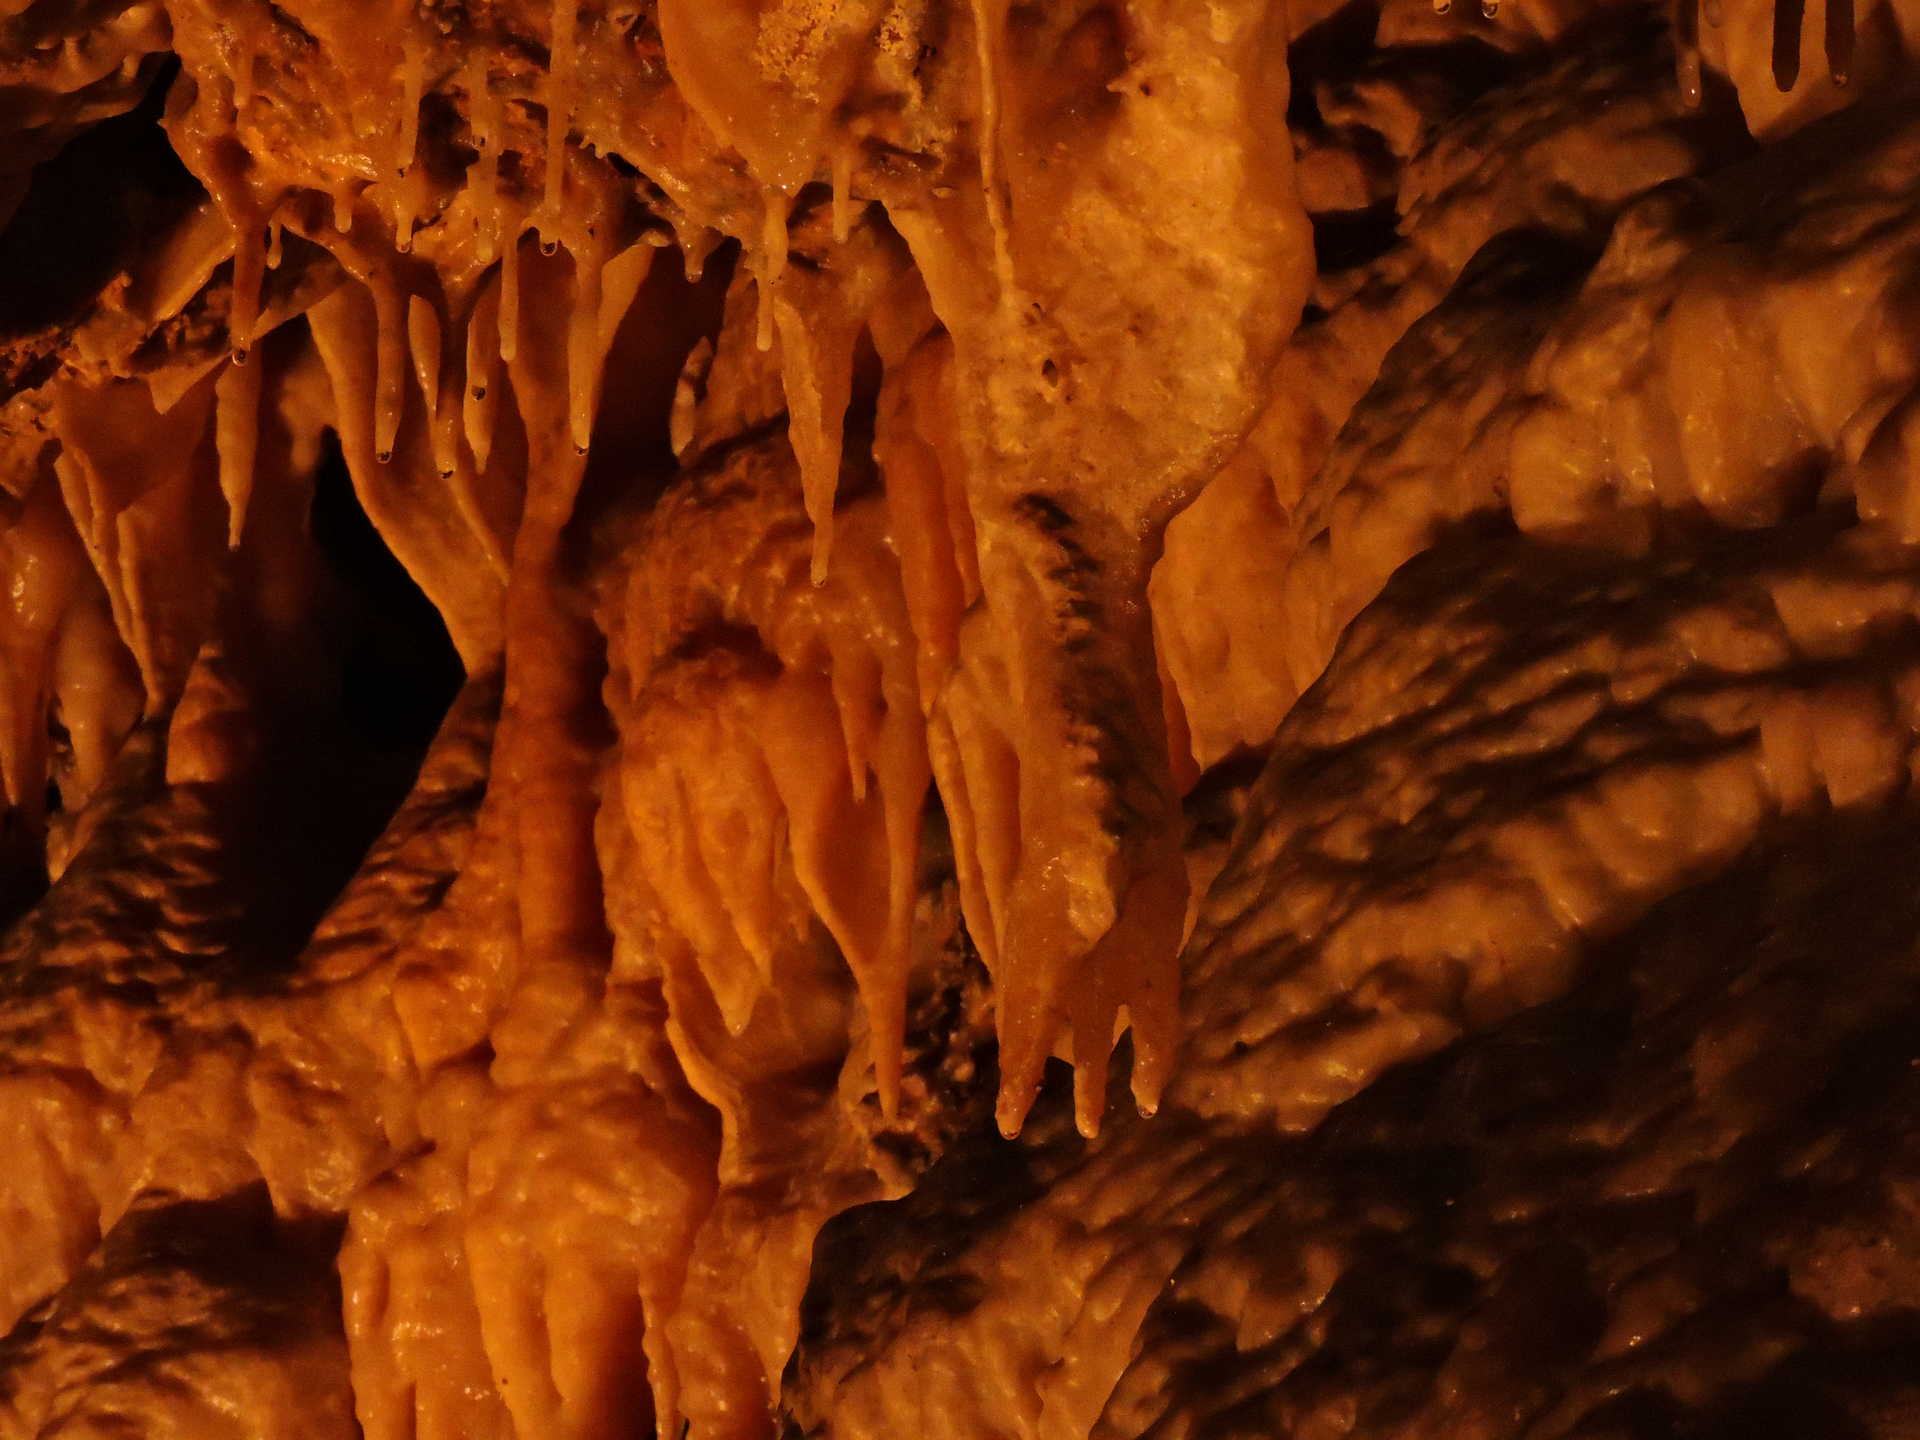 Cueva de Don Juan